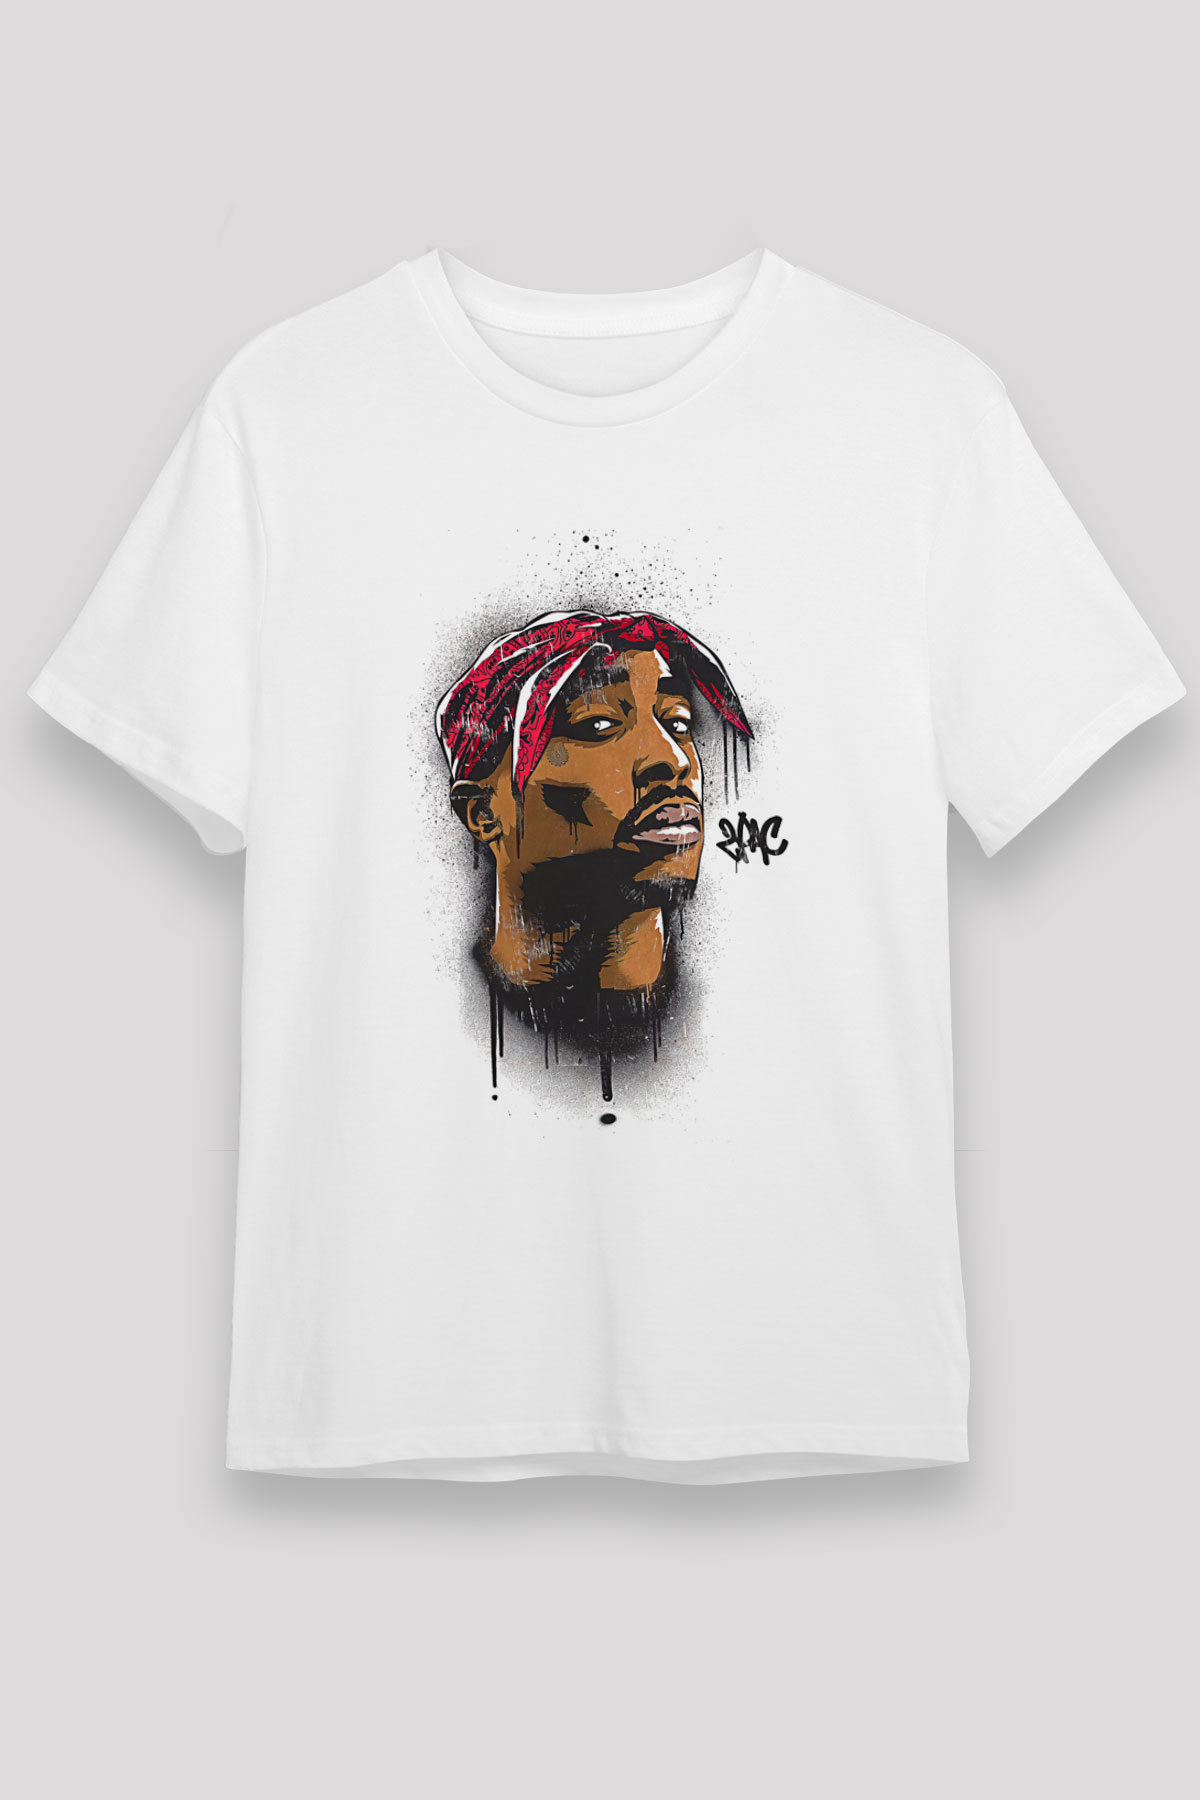 West Side Connection T shirt,Hip Hop,Rap Tshirt 04